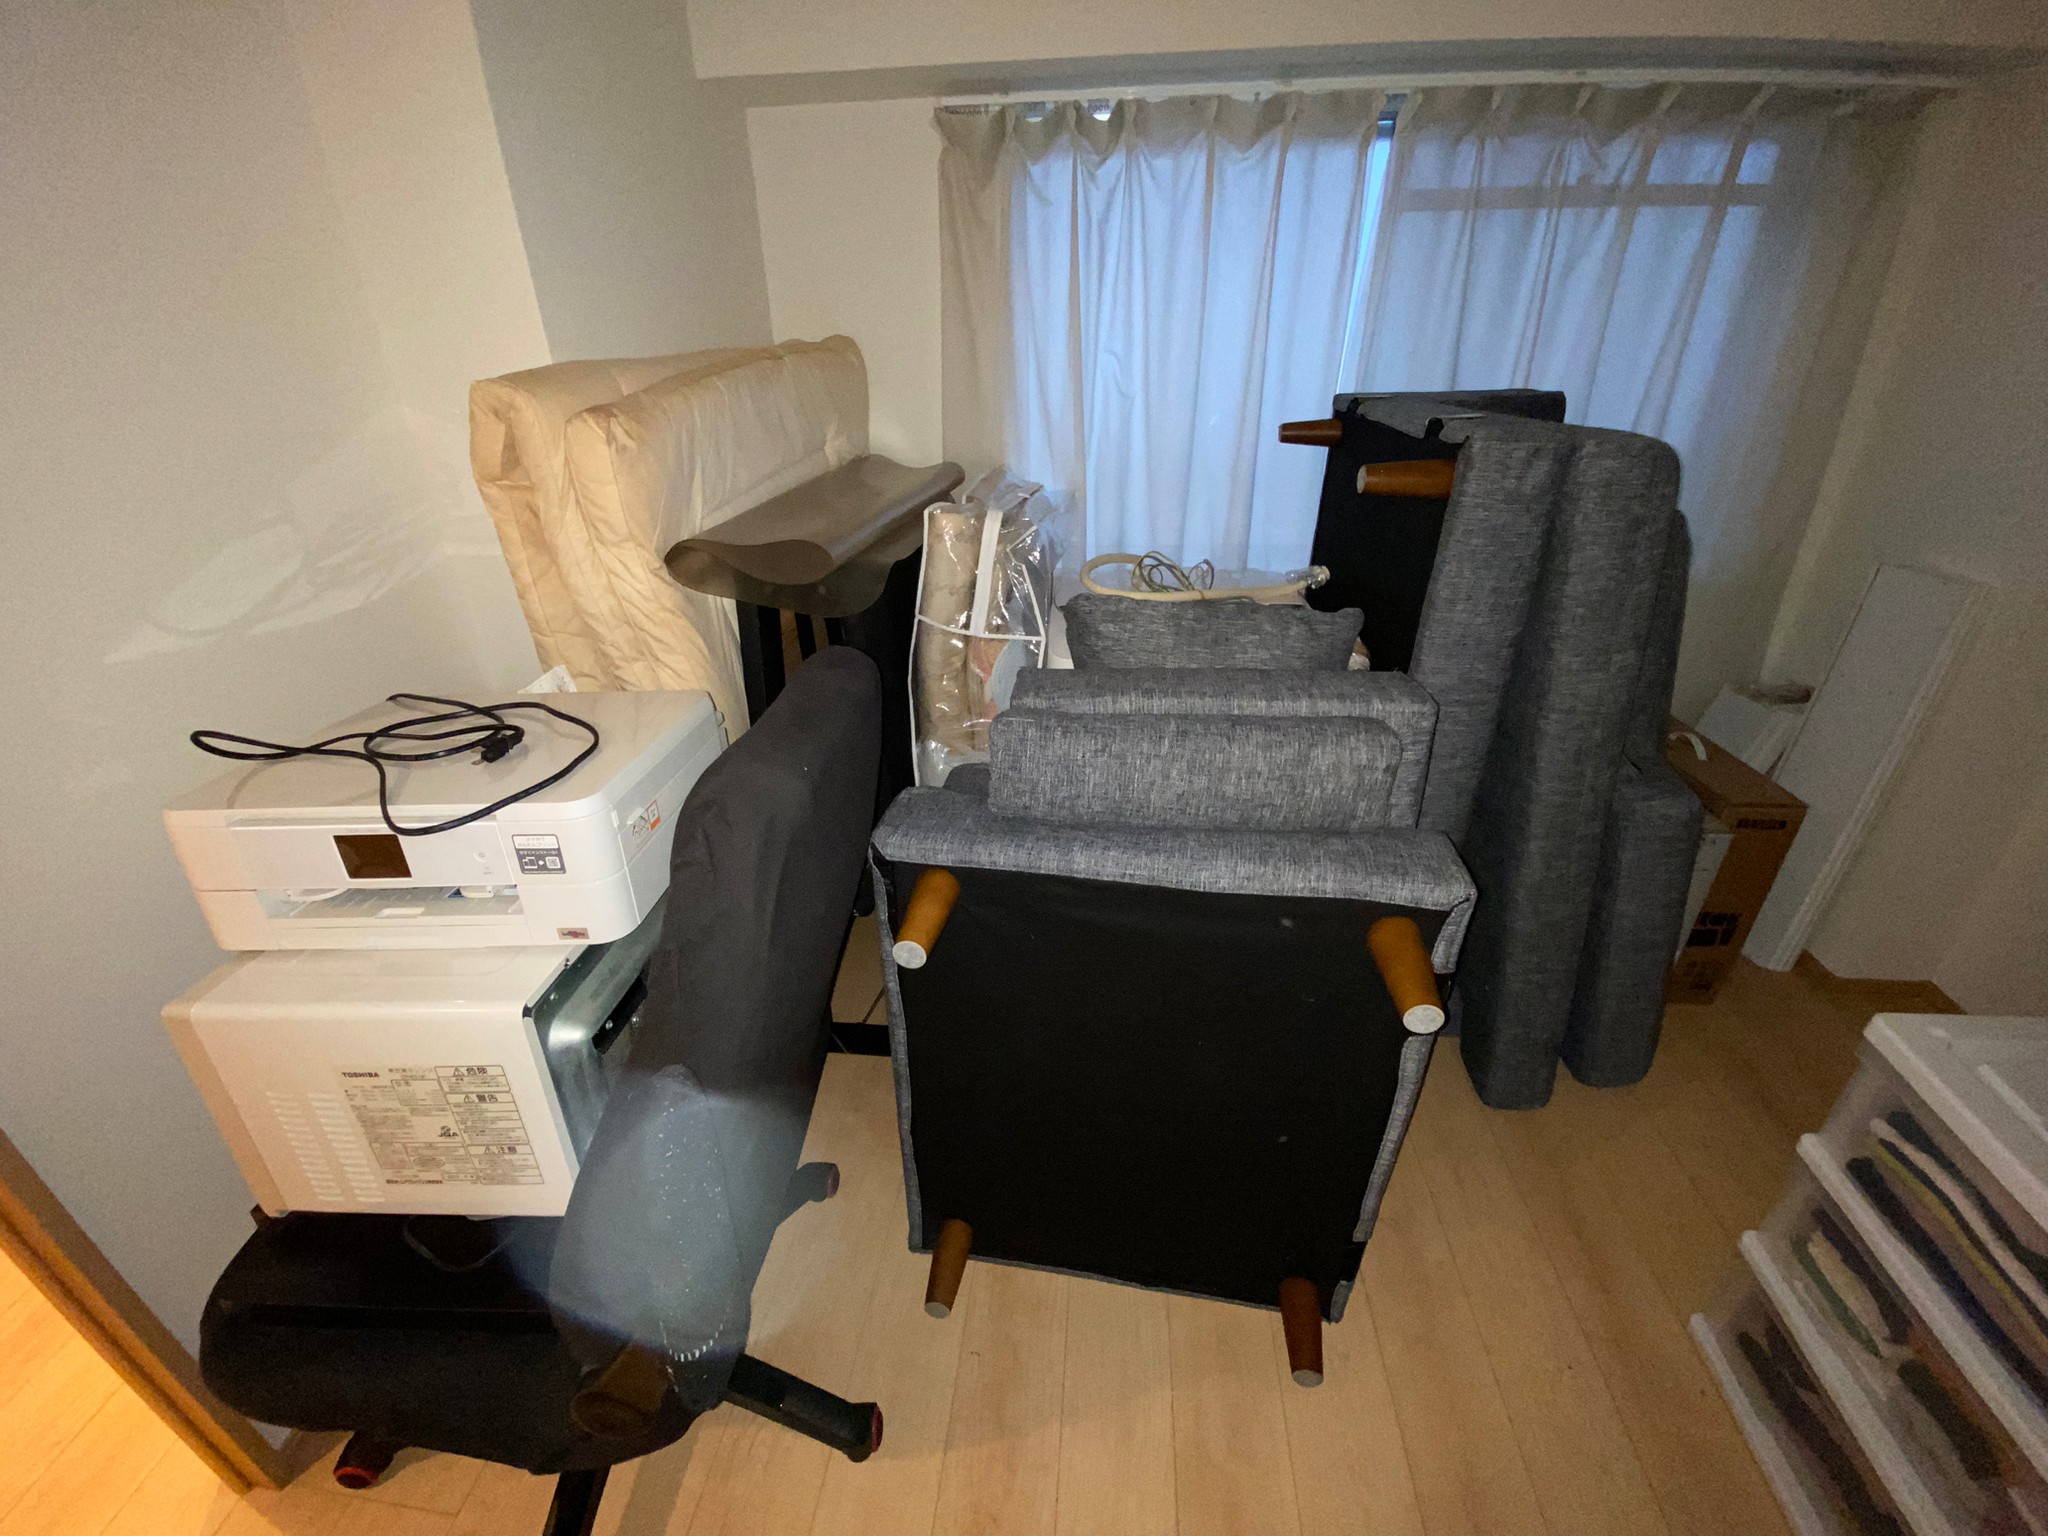 ソファ、電子レンジ、寝具、椅子などの回収前の状態